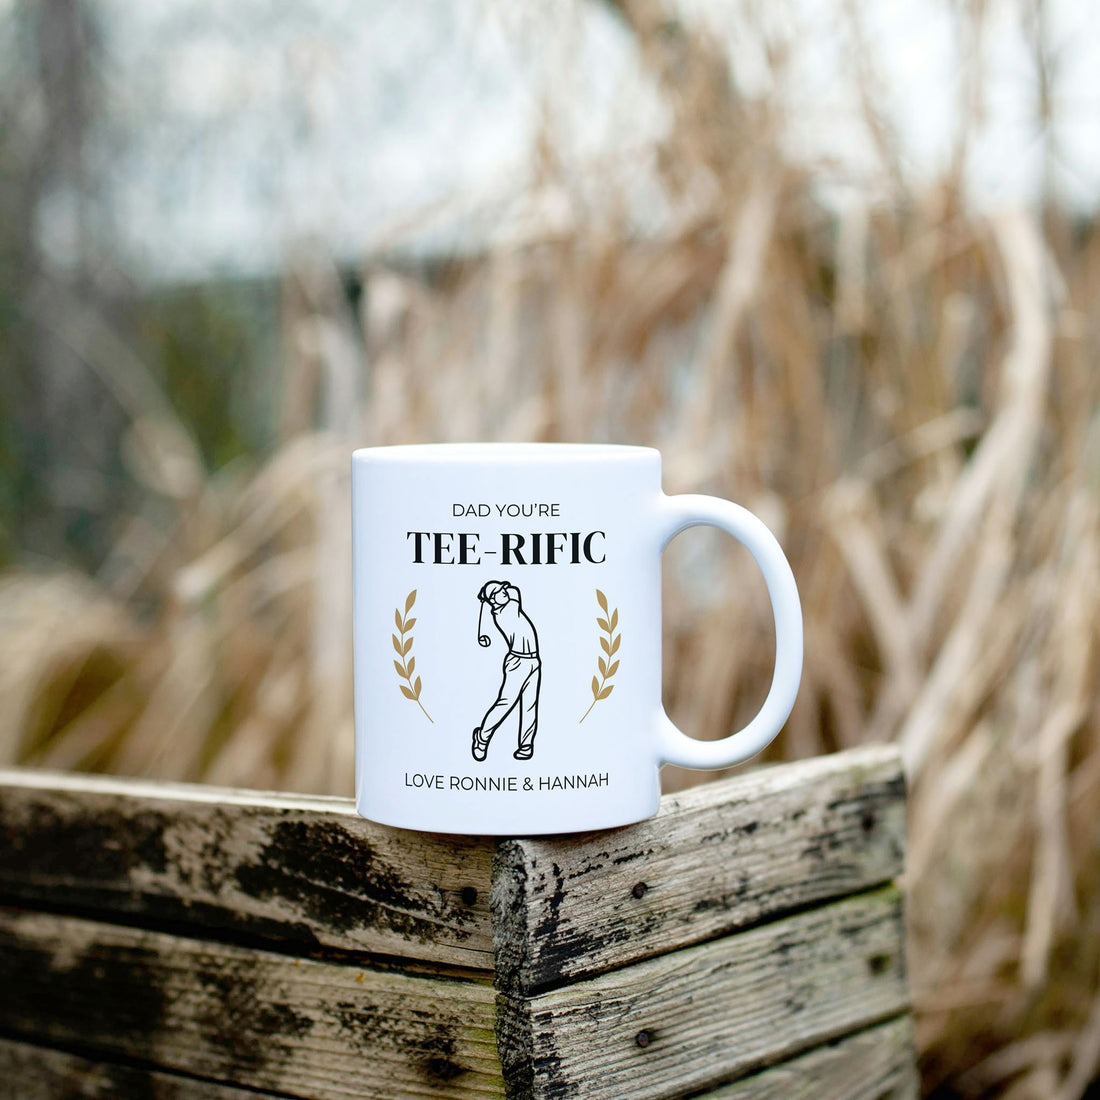 Golfing mug gift